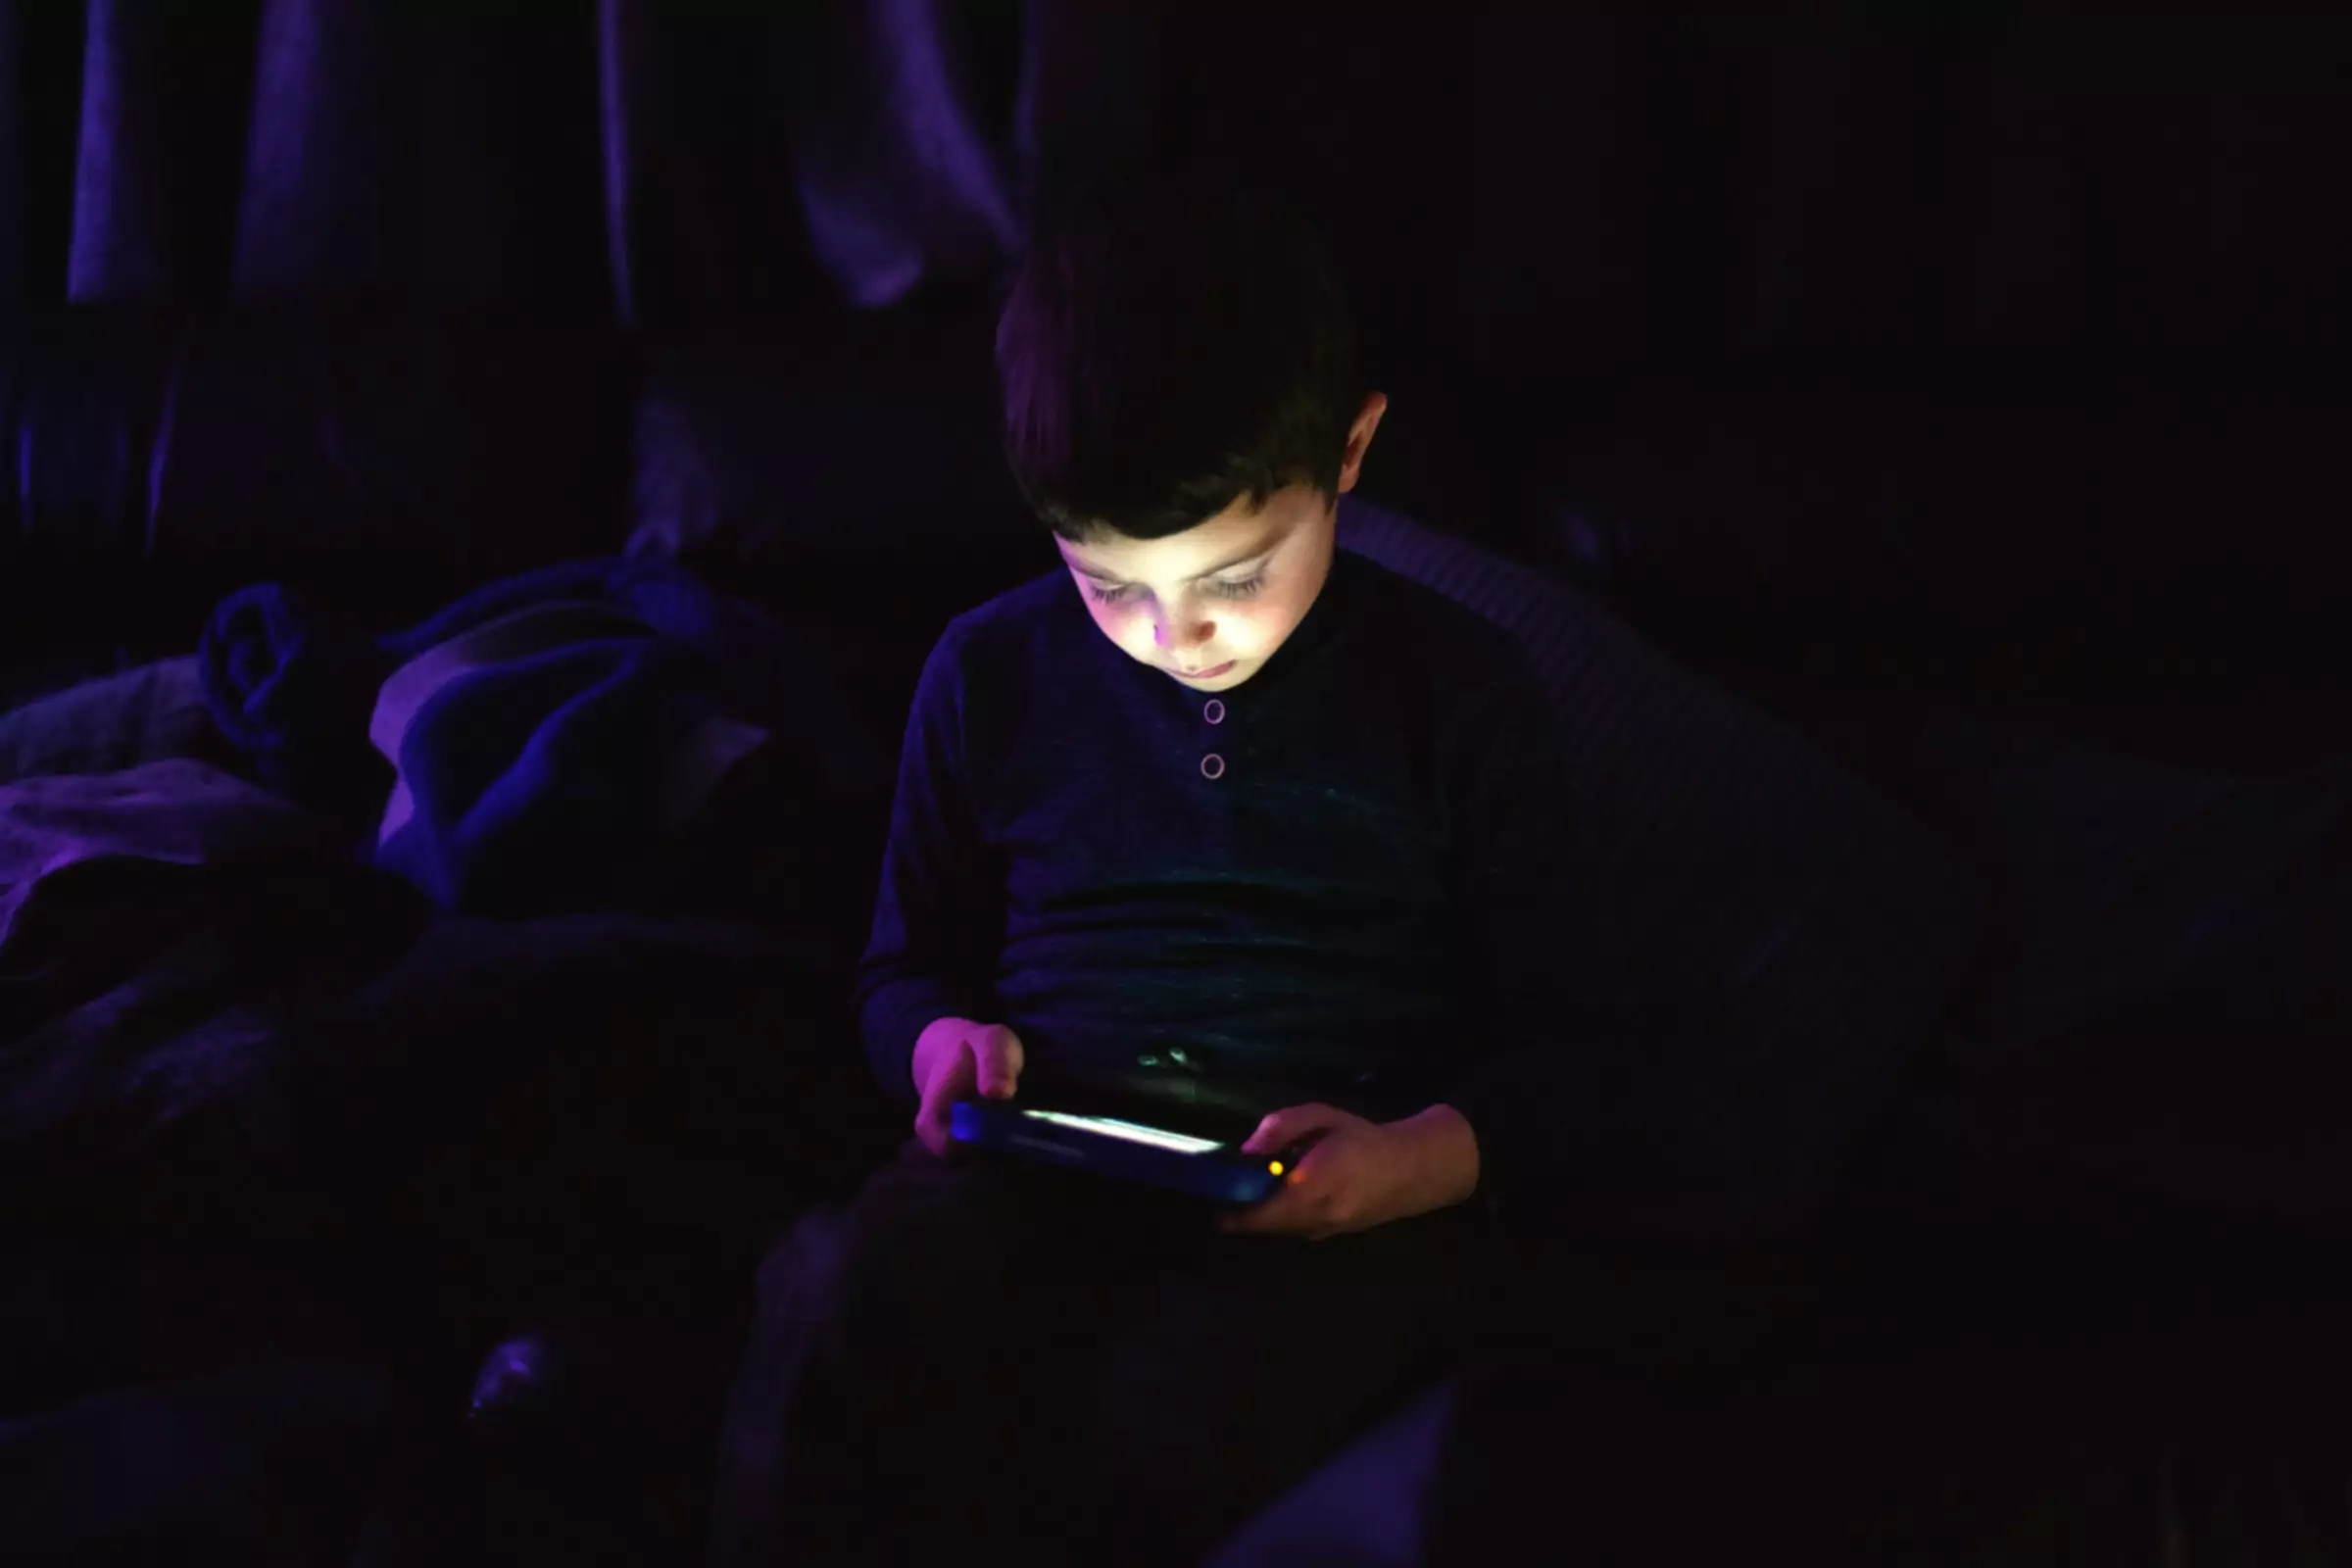 Jeune enfant jouant sur une tablette dans une pièce sombre